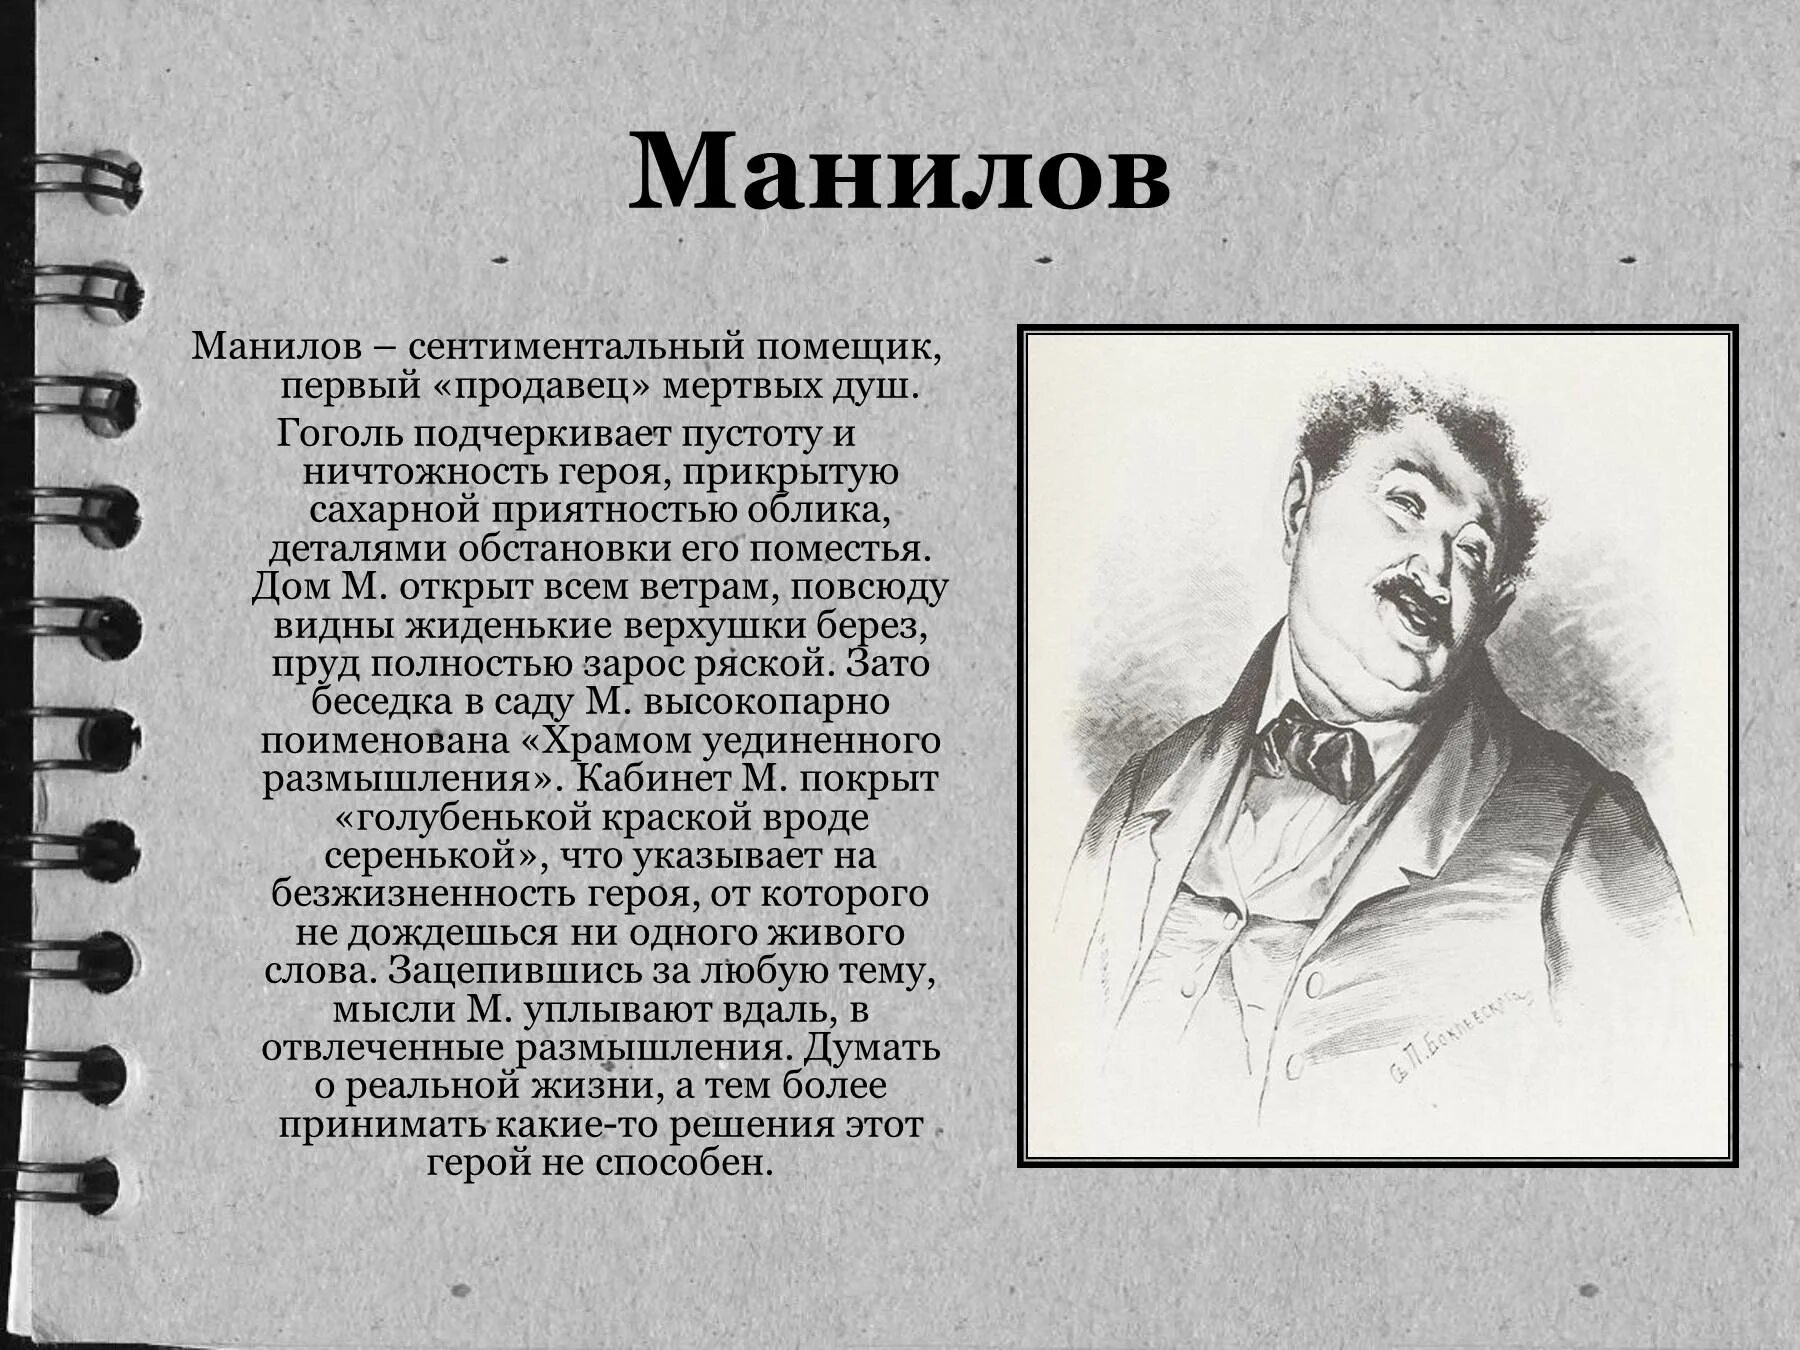 Гоголь мертвые души Манилов. Гоголь мертвые души герои Манилов. Манилов персонаж характеристика. Характеристика героев поэмы мертвые души Манилов портрет.